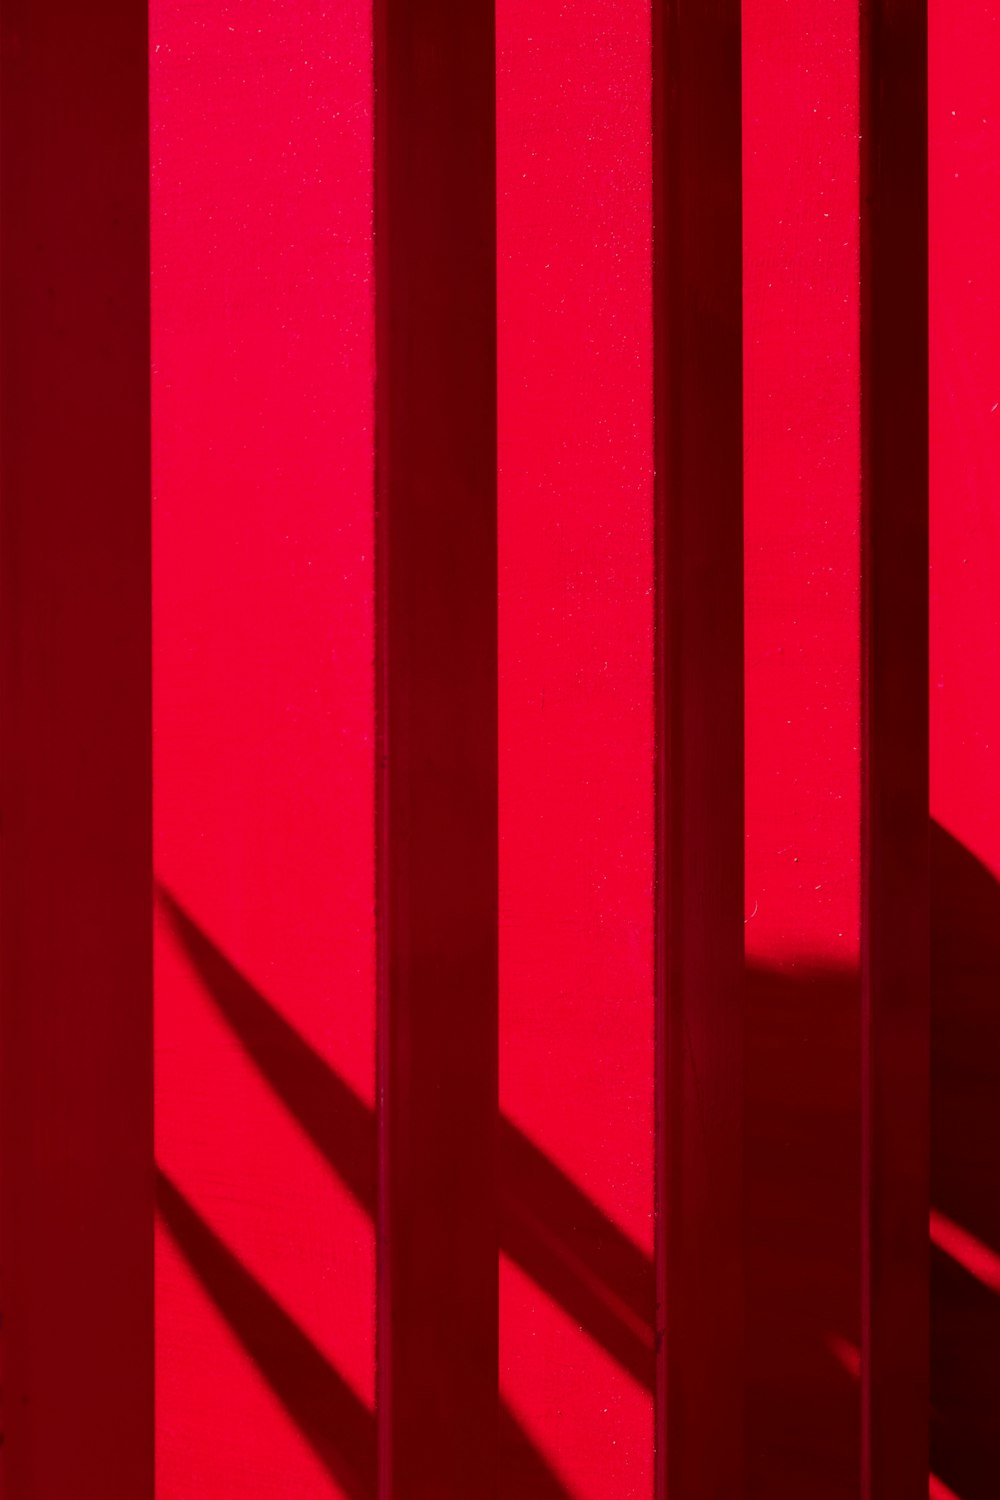 a sombra de uma pessoa em frente a uma parede vermelha